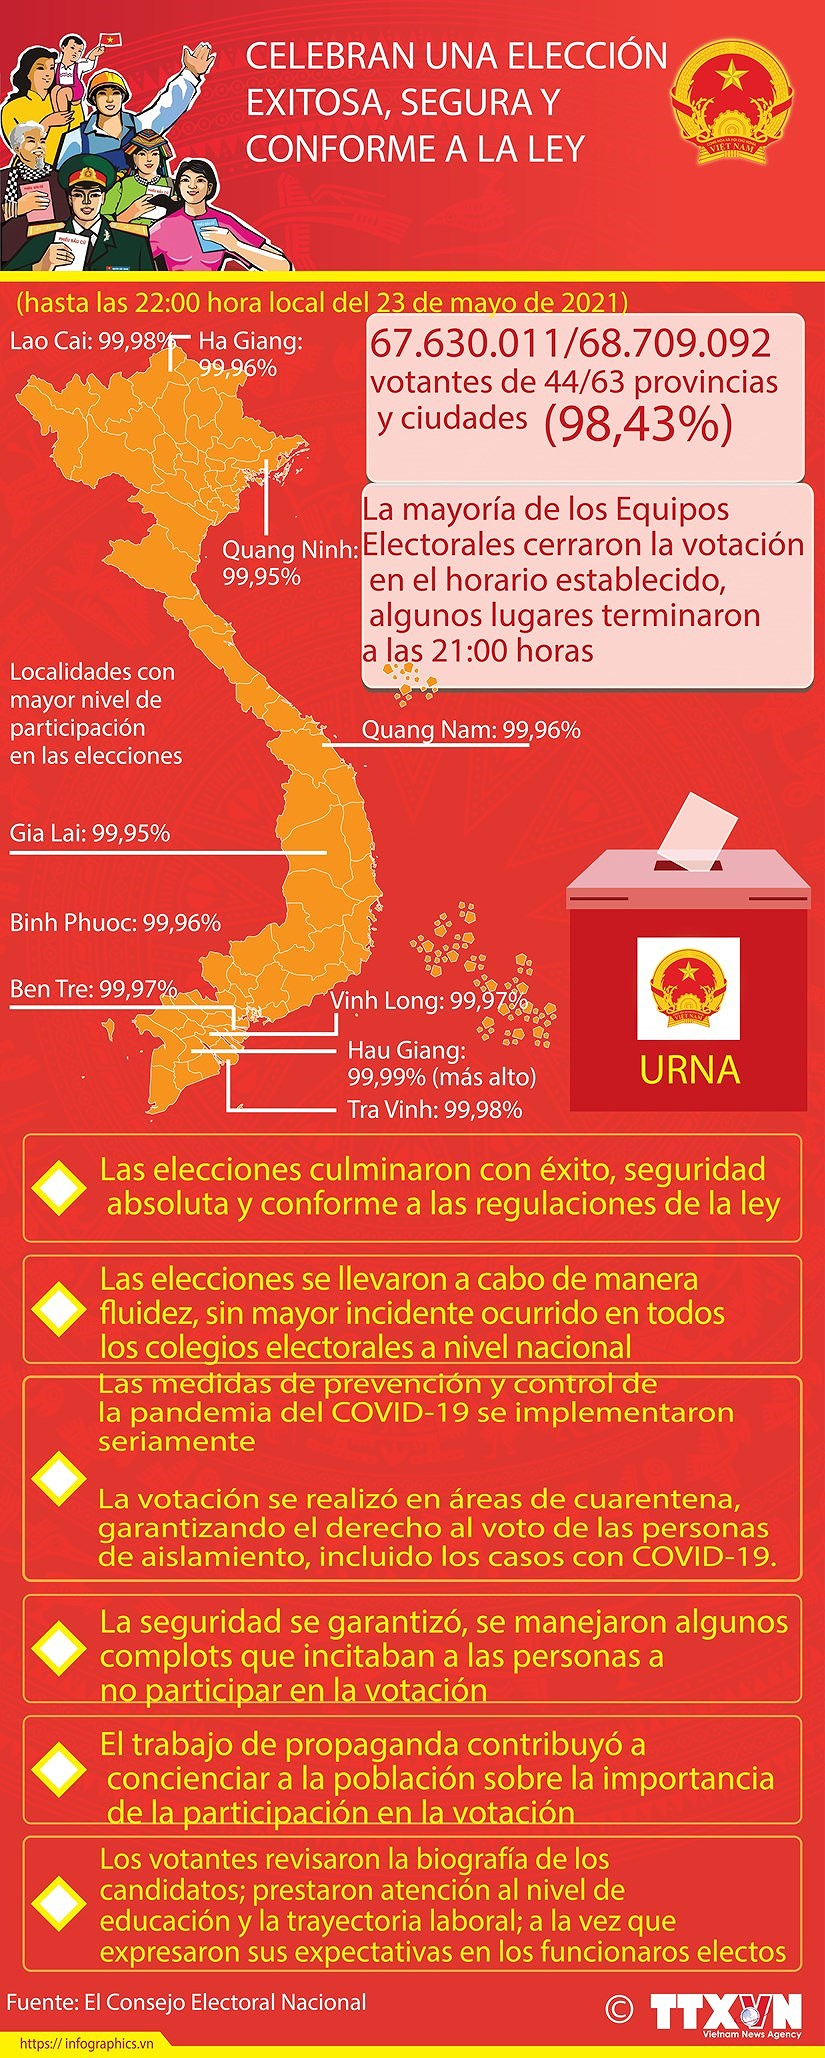 Exito de las elecciones legislativas en Vietnam gracias al poder del pueblo hinh anh 10